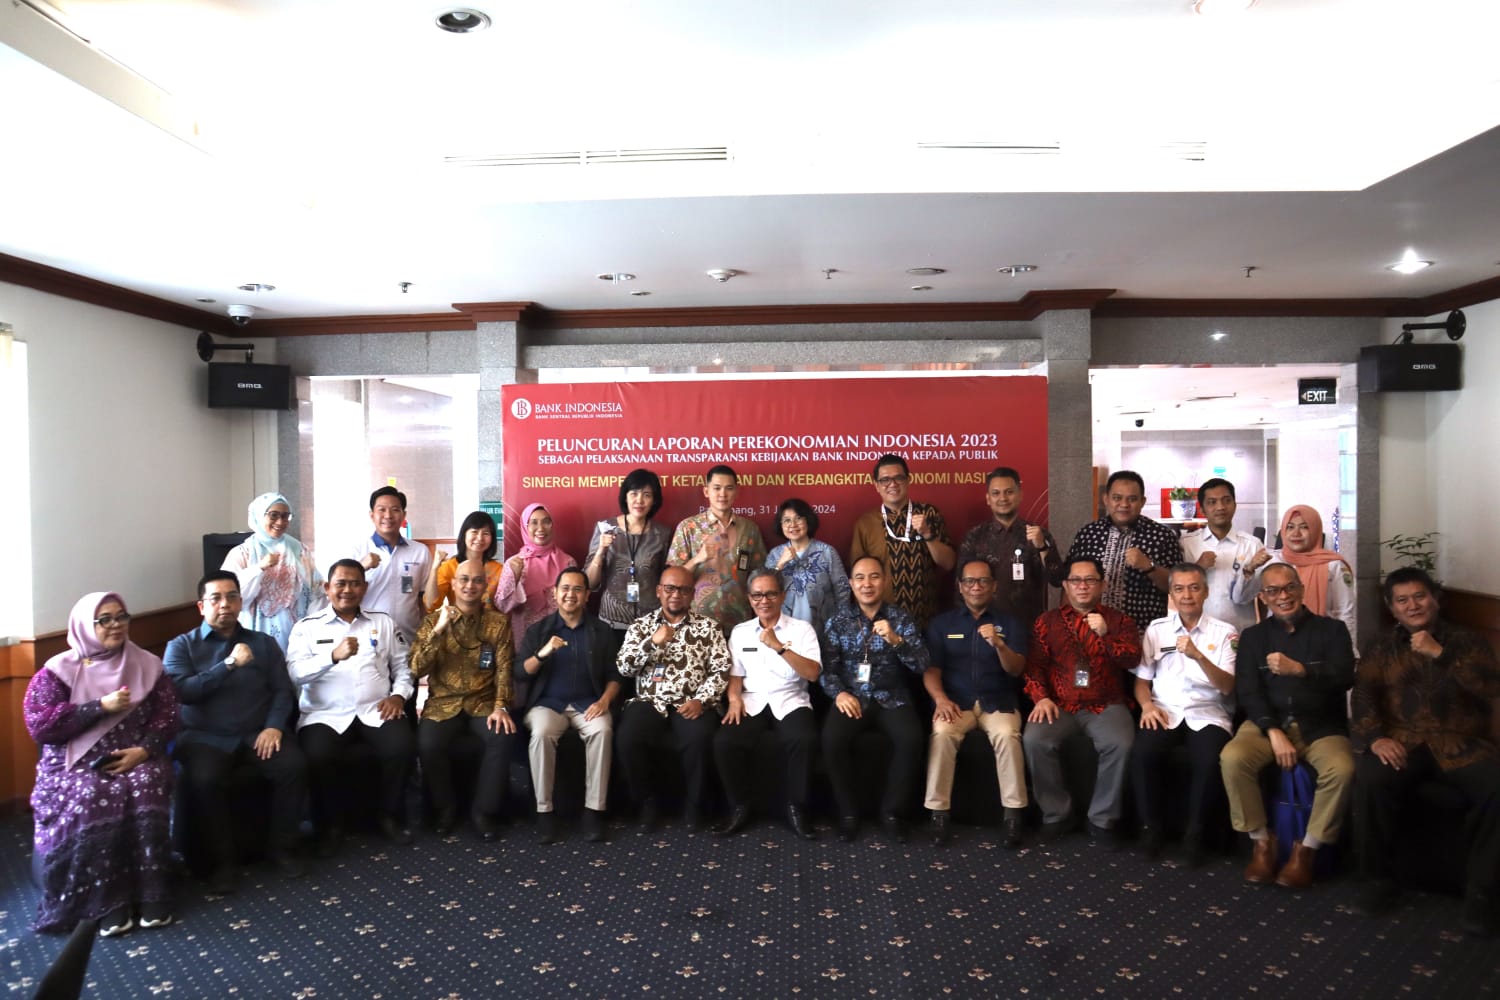 Luncurkan LPI 2023, Gubernur Bank Indonesia Sampaikan Tiga Pelajaran Penting, Simak